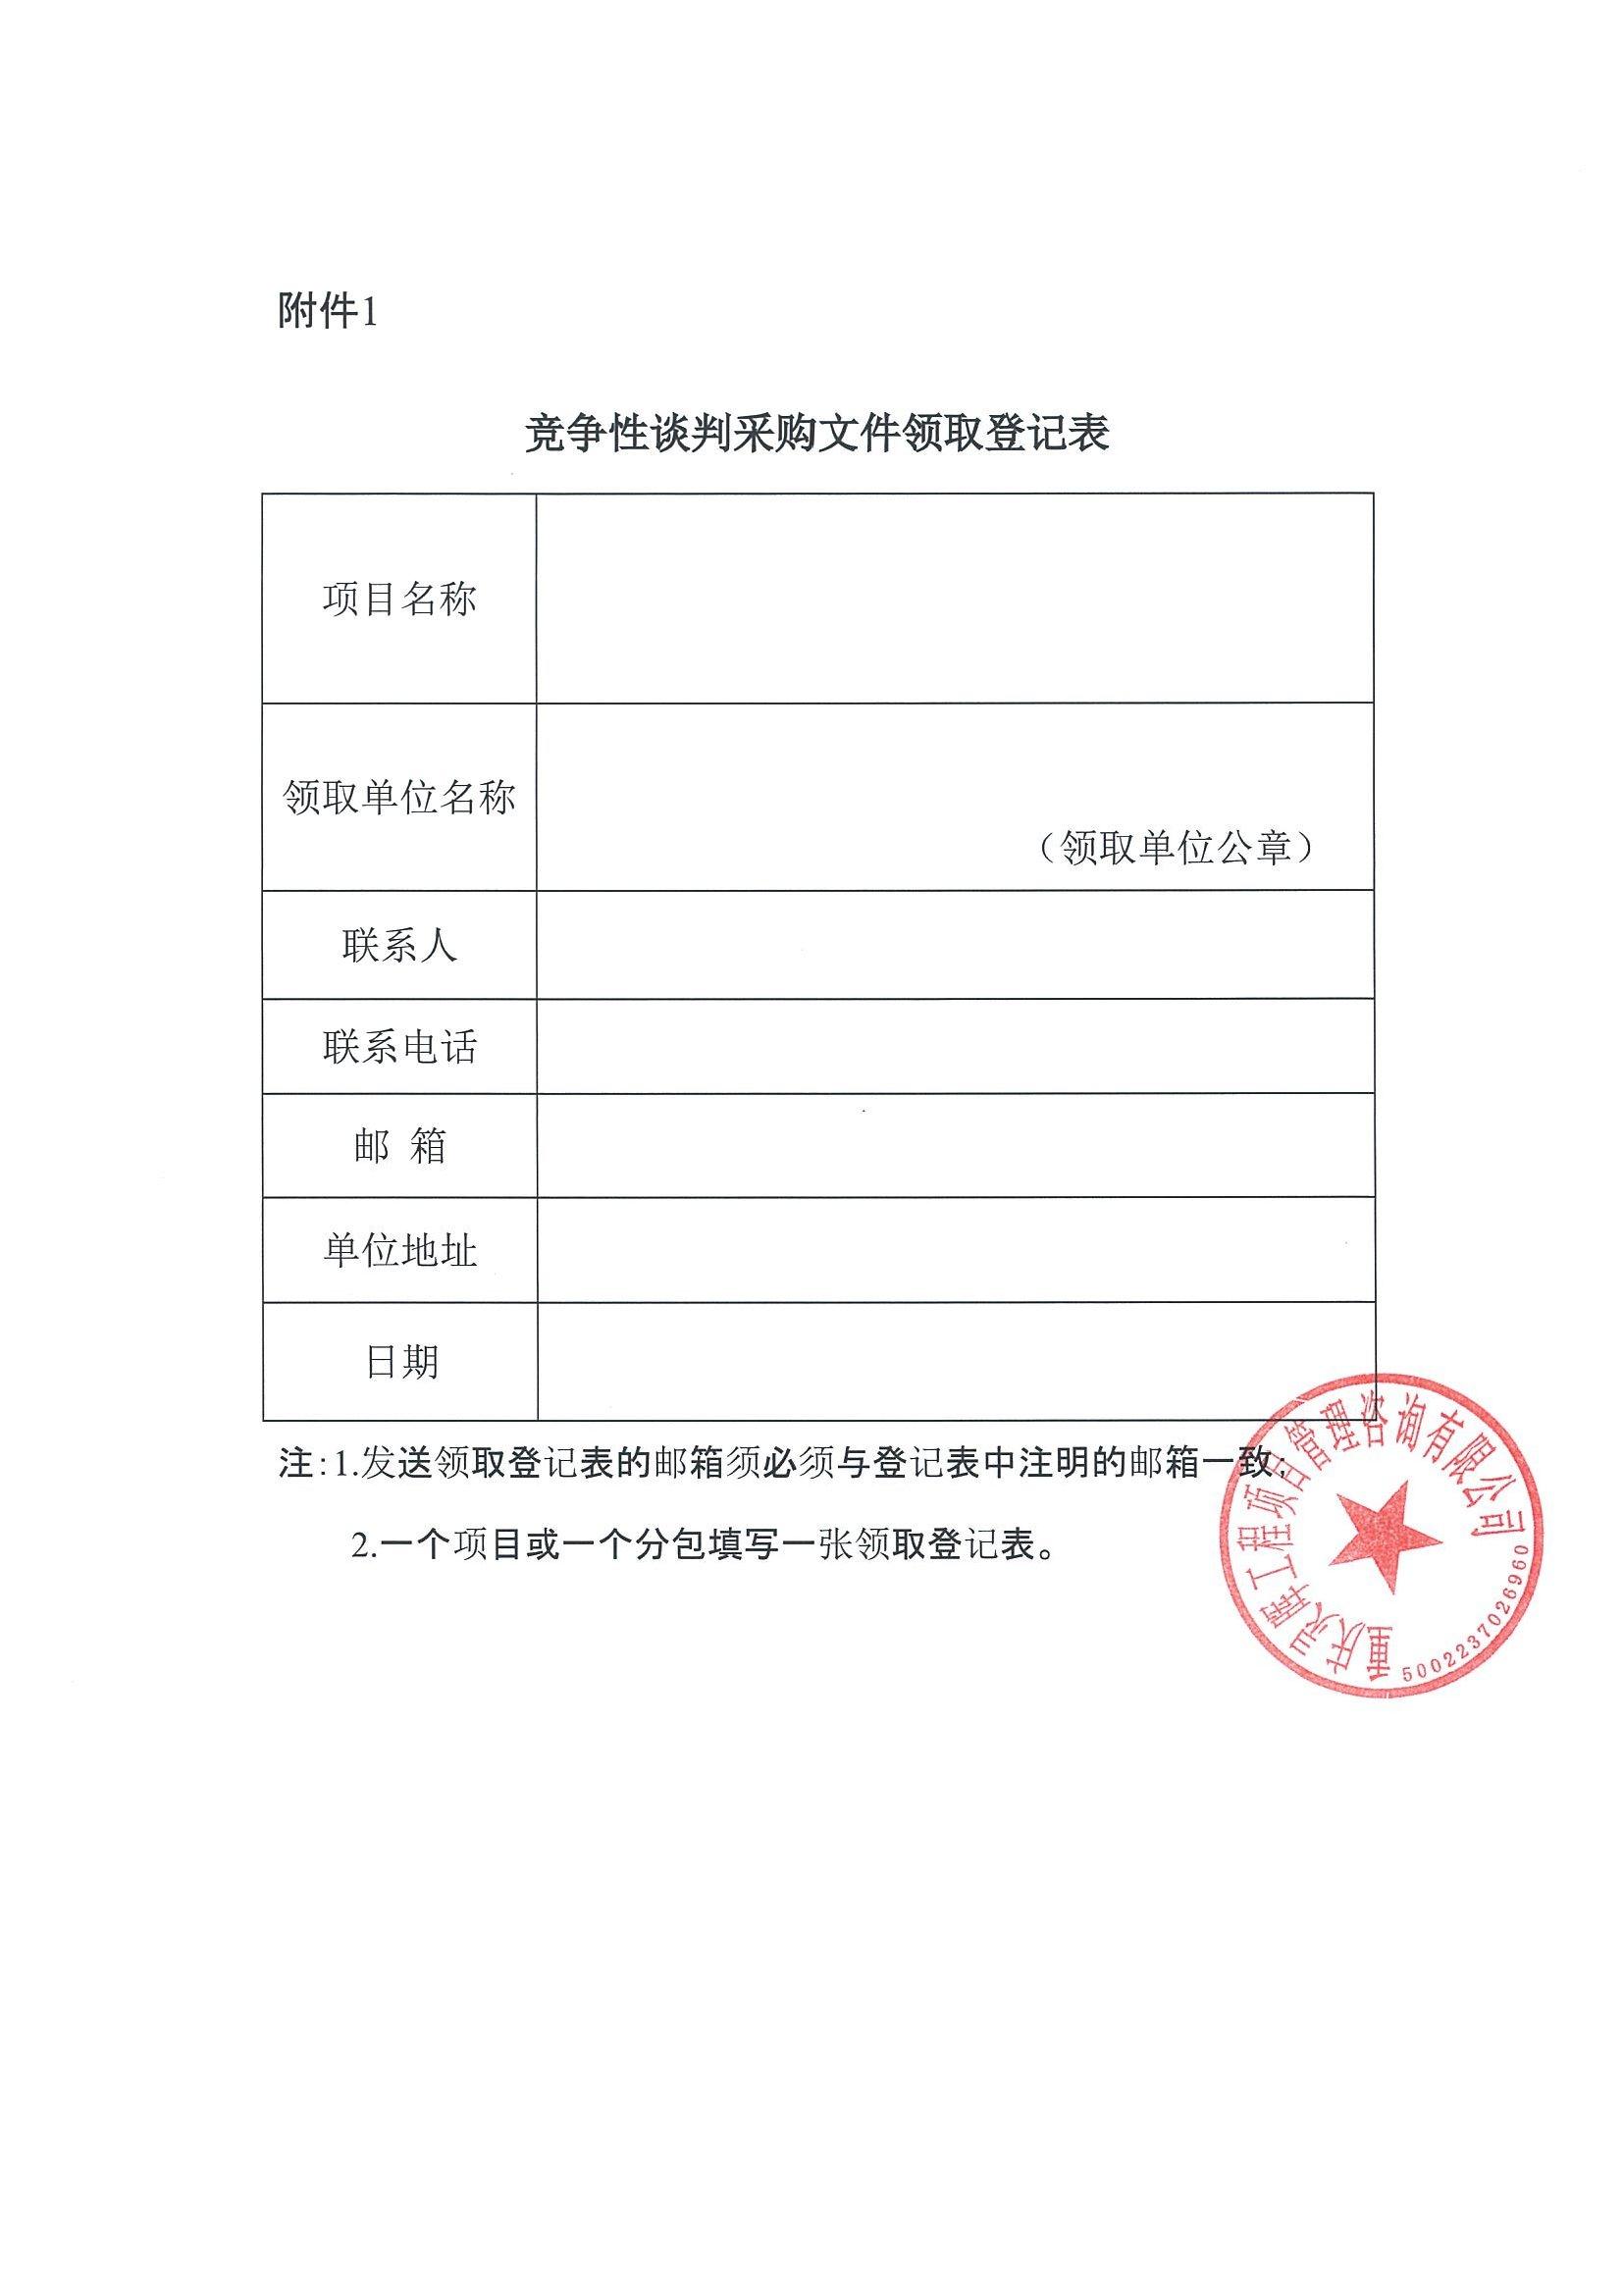 欧宝体育官方网站:关于印发〈重庆市政府采购供应商注册及诚信管理暂行办法〉的通知